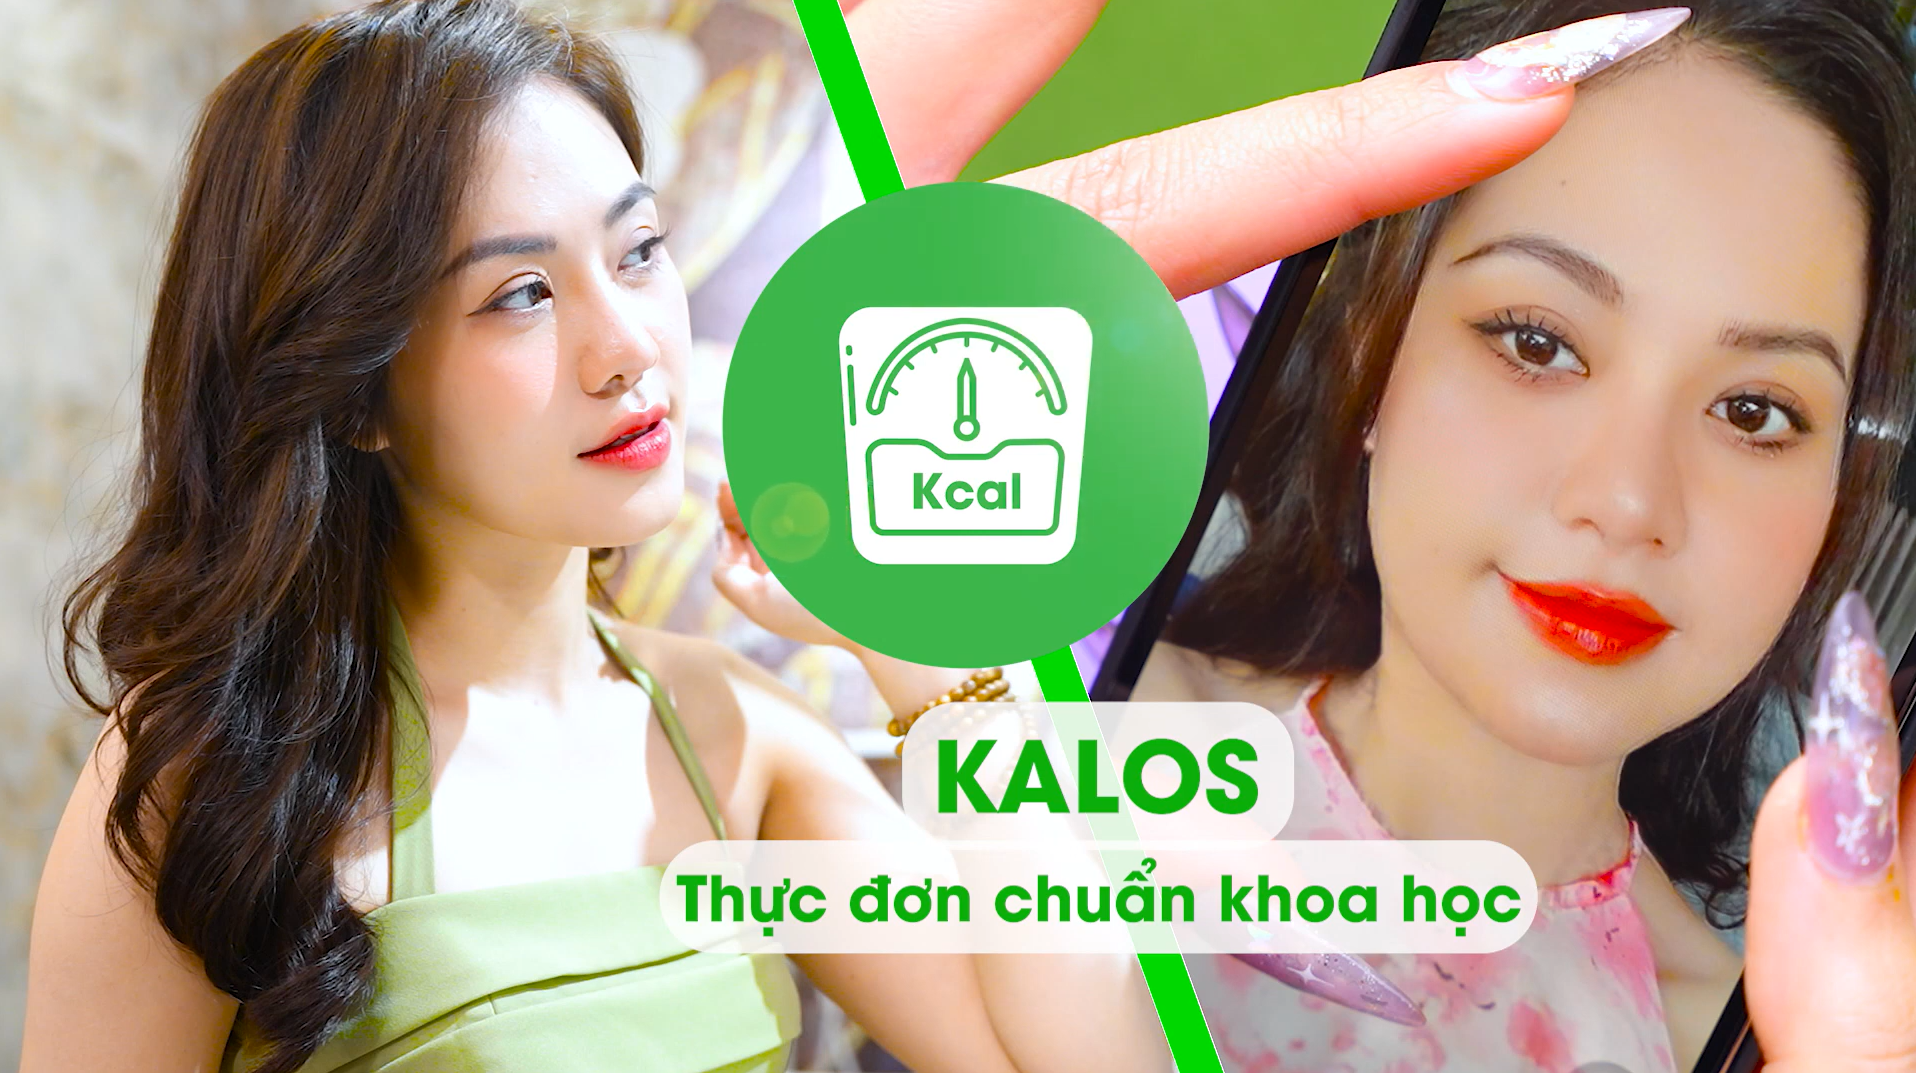 [Kalos - Câu chuyện] Mai Linh đã giảm được 10kg nhờ Kalos - Thực đơn tăng giảm cân chuẩn khoa học